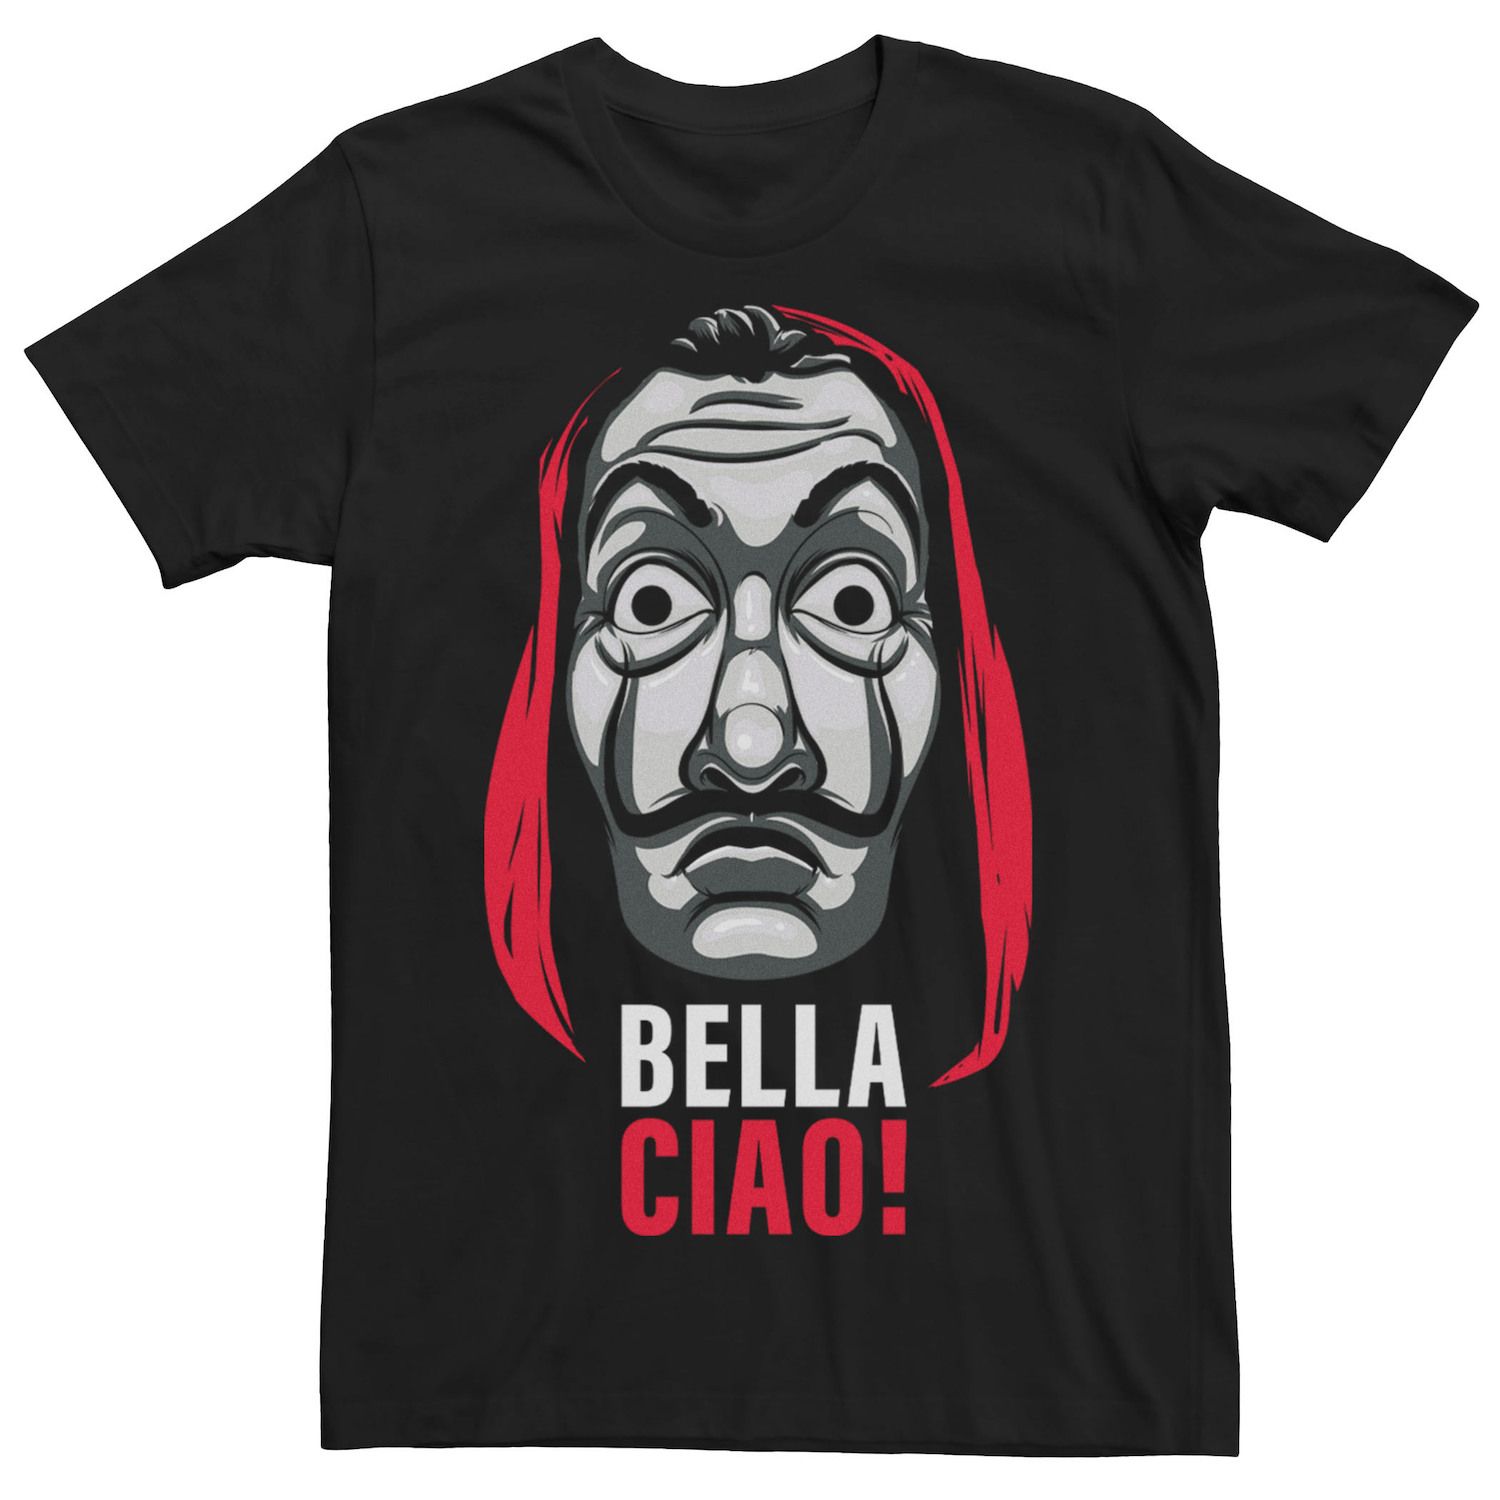 Мужская футболка с маской Netflix La Casa De Papel Bella Ciao Licensed Character мужская футболка с коротким рукавом la casa de papel bella ciao zeppelin group в маске fifth sun черный